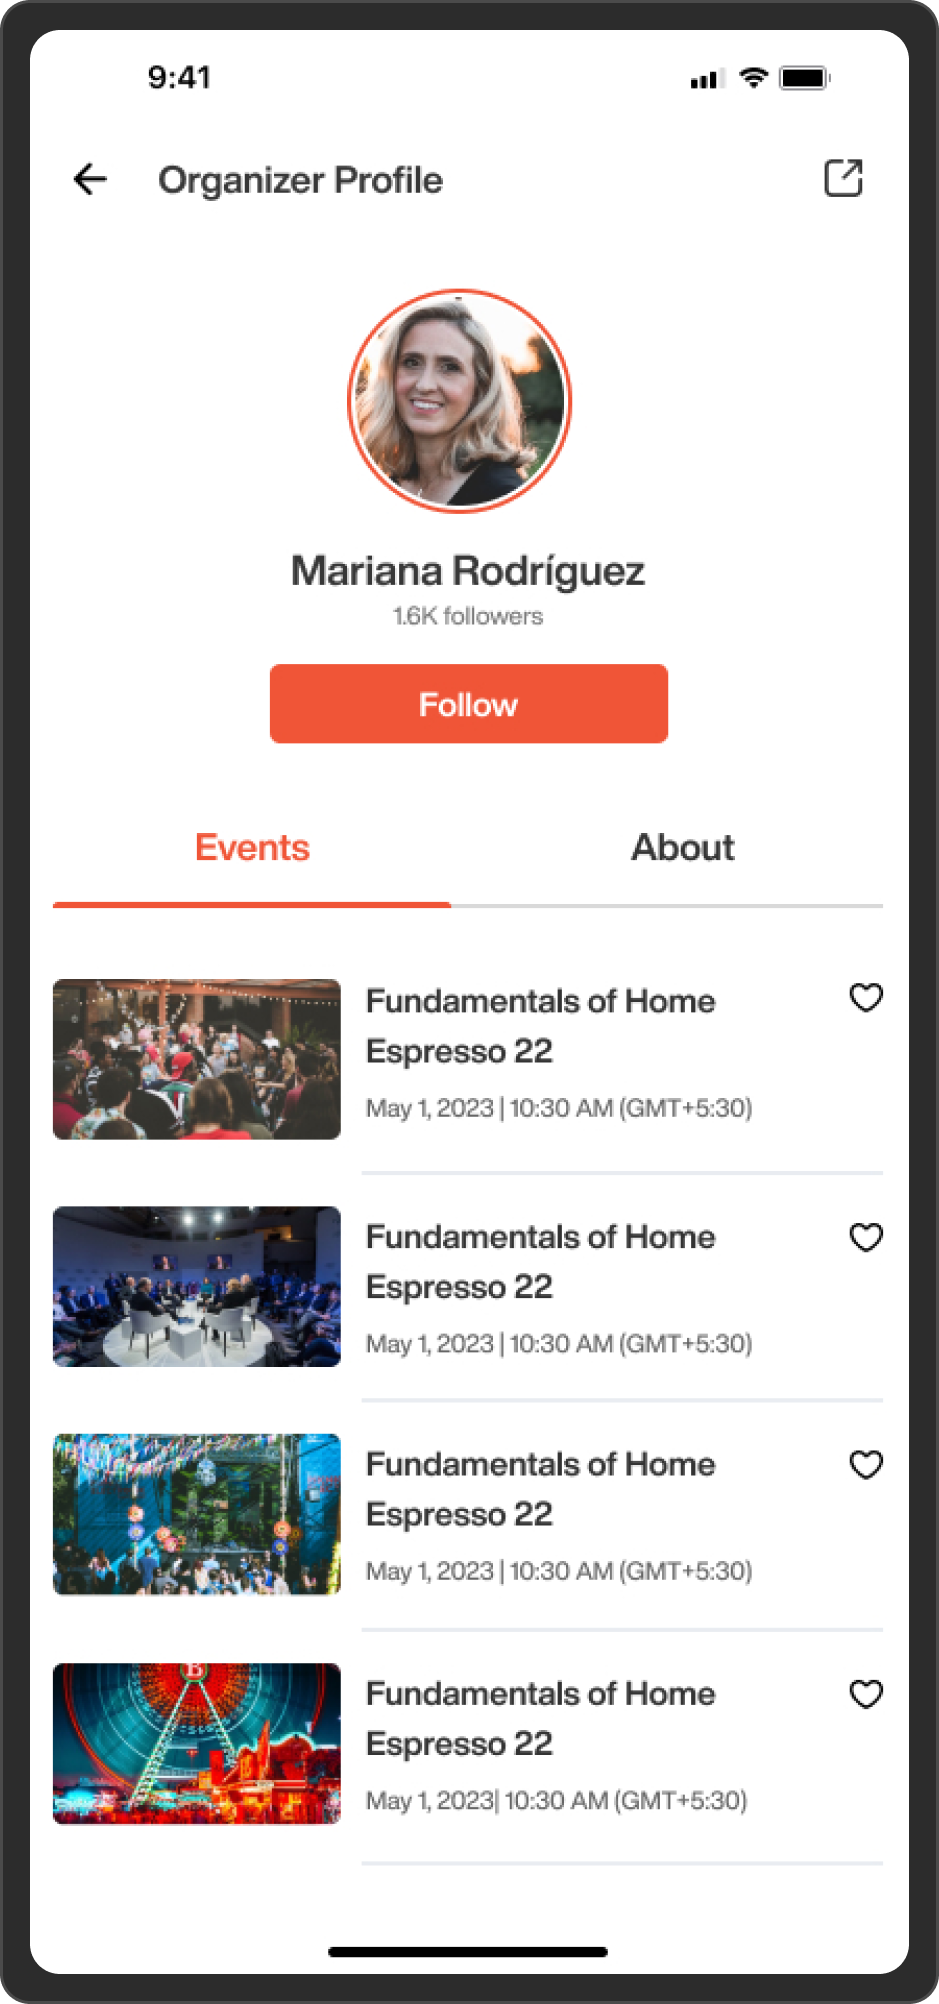 Organizer Profile